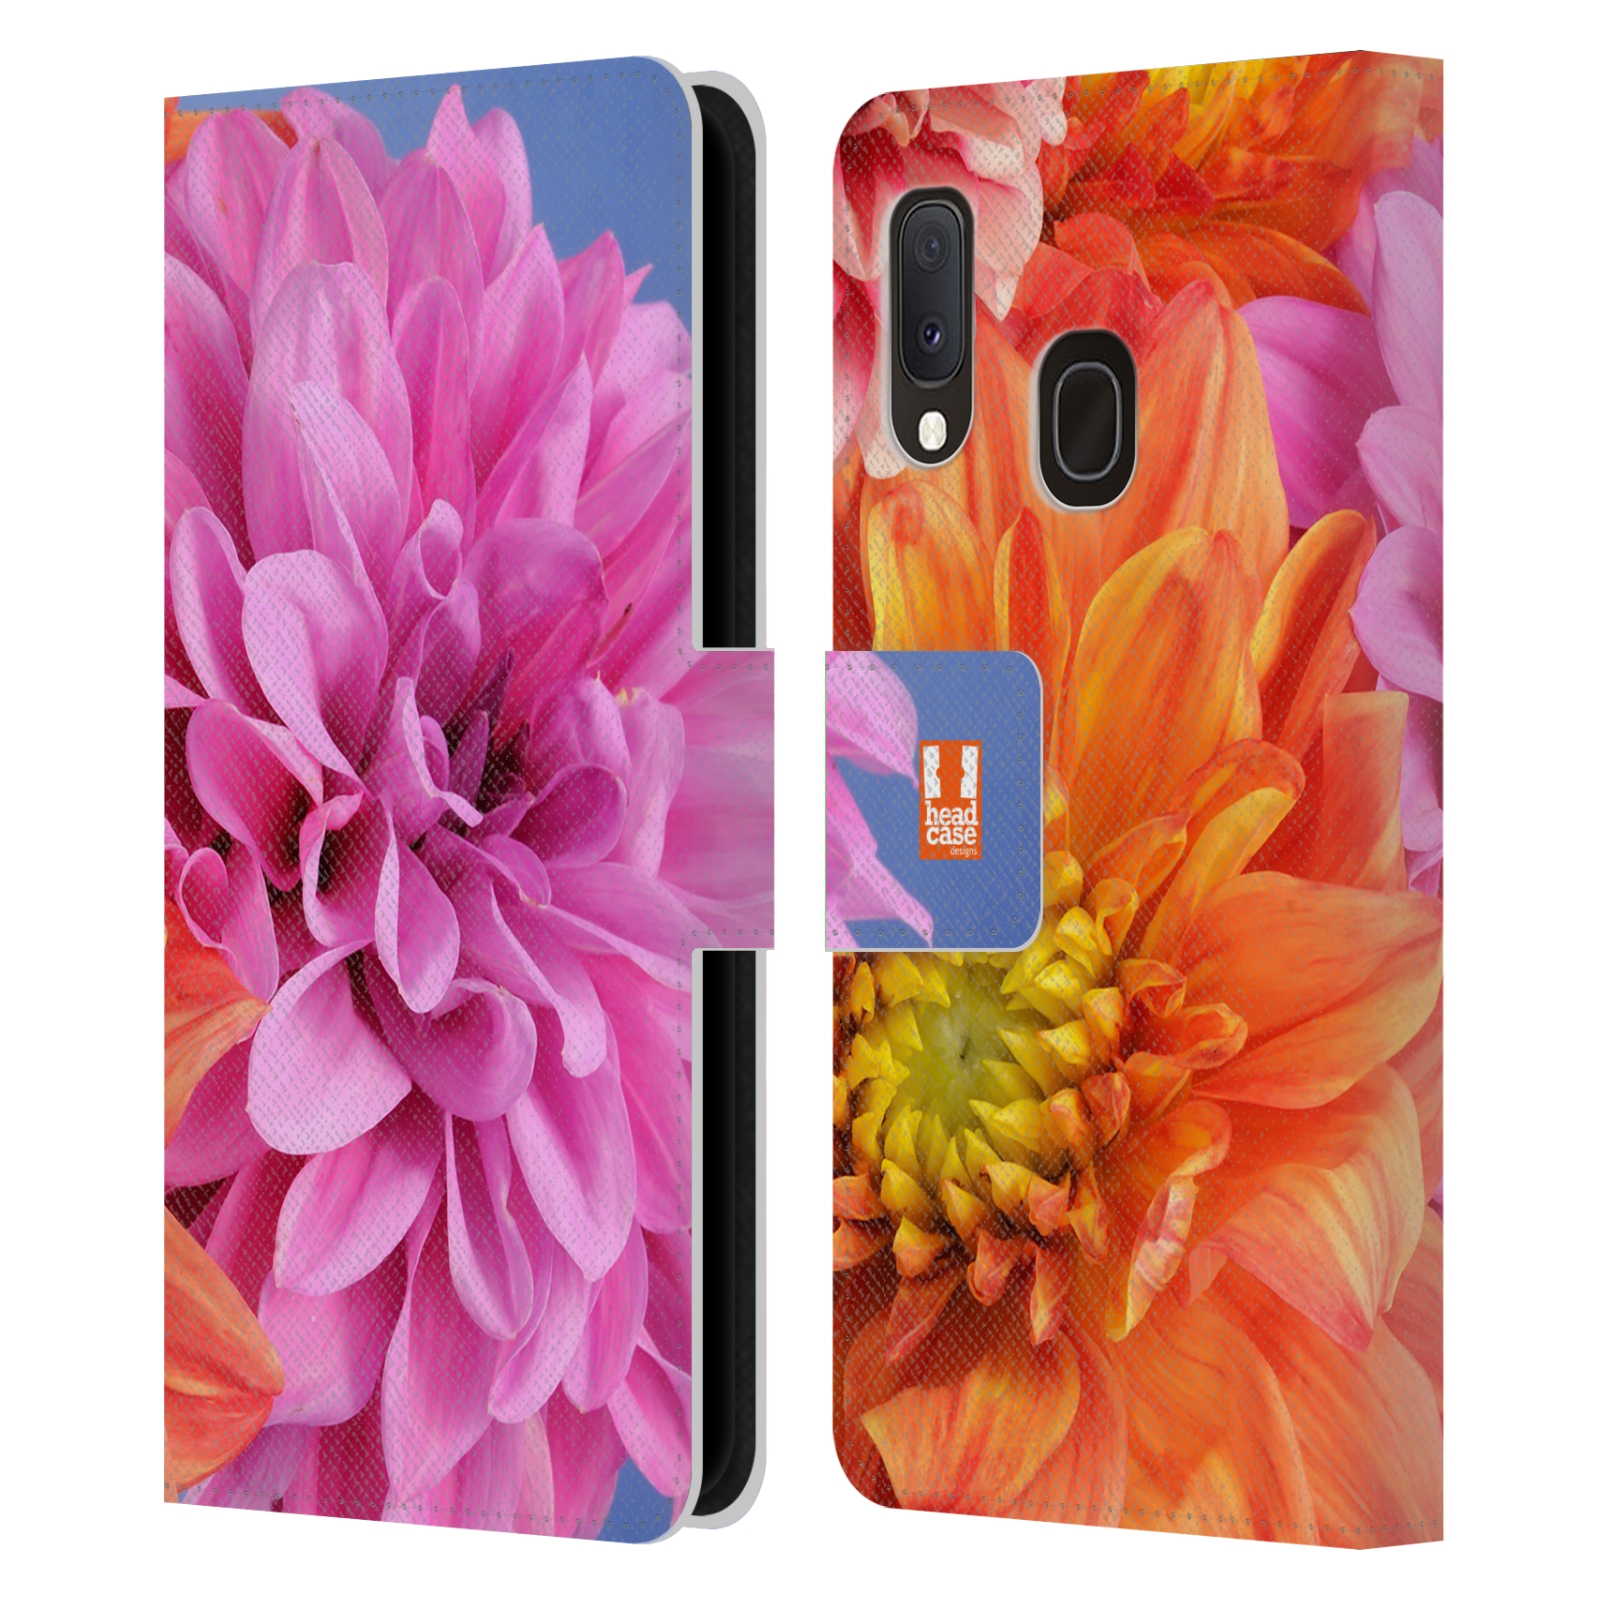 Pouzdro na mobil Samsung Galaxy A20e květy foto Jiřinka růžová a oranžová